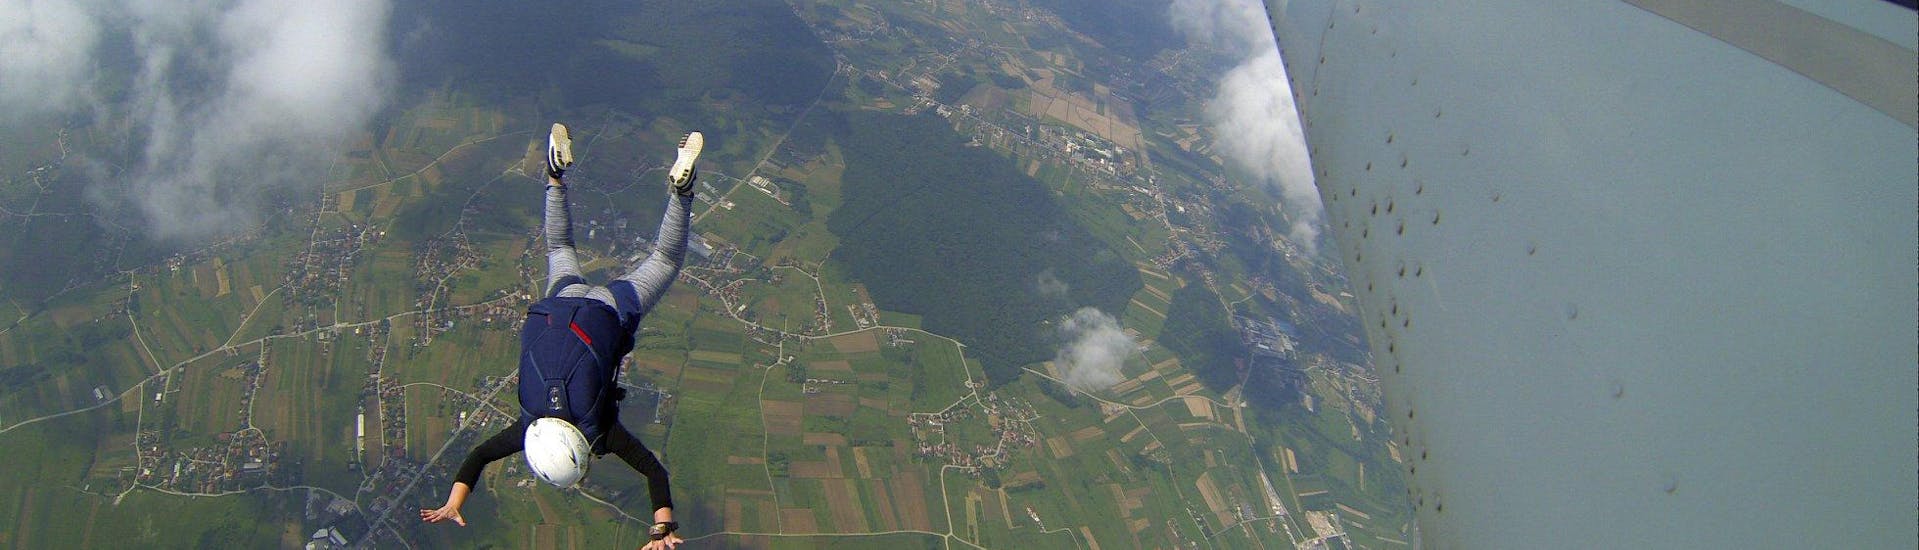 Tandem Skydive in Zagreb from 3000m.